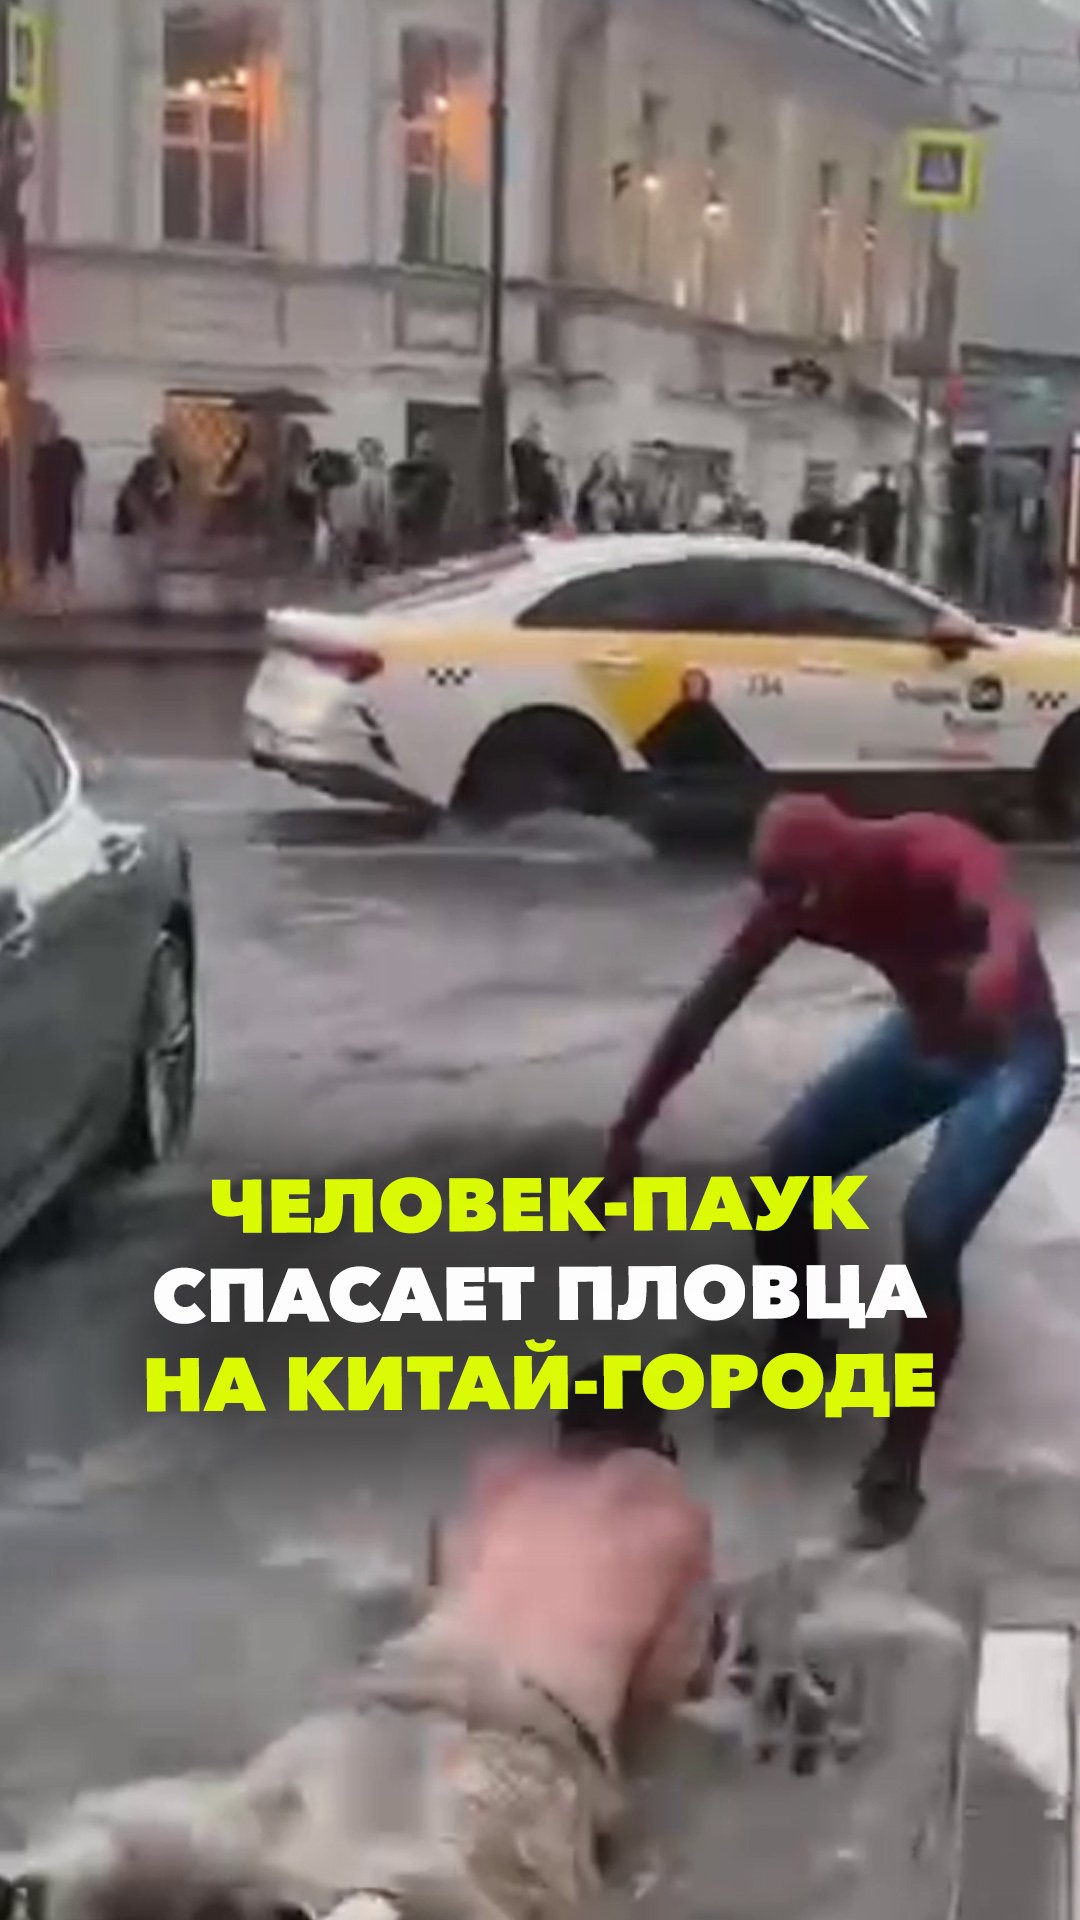 Человек-паук "спас" пловца на Китай-городе во время ливня в Москве